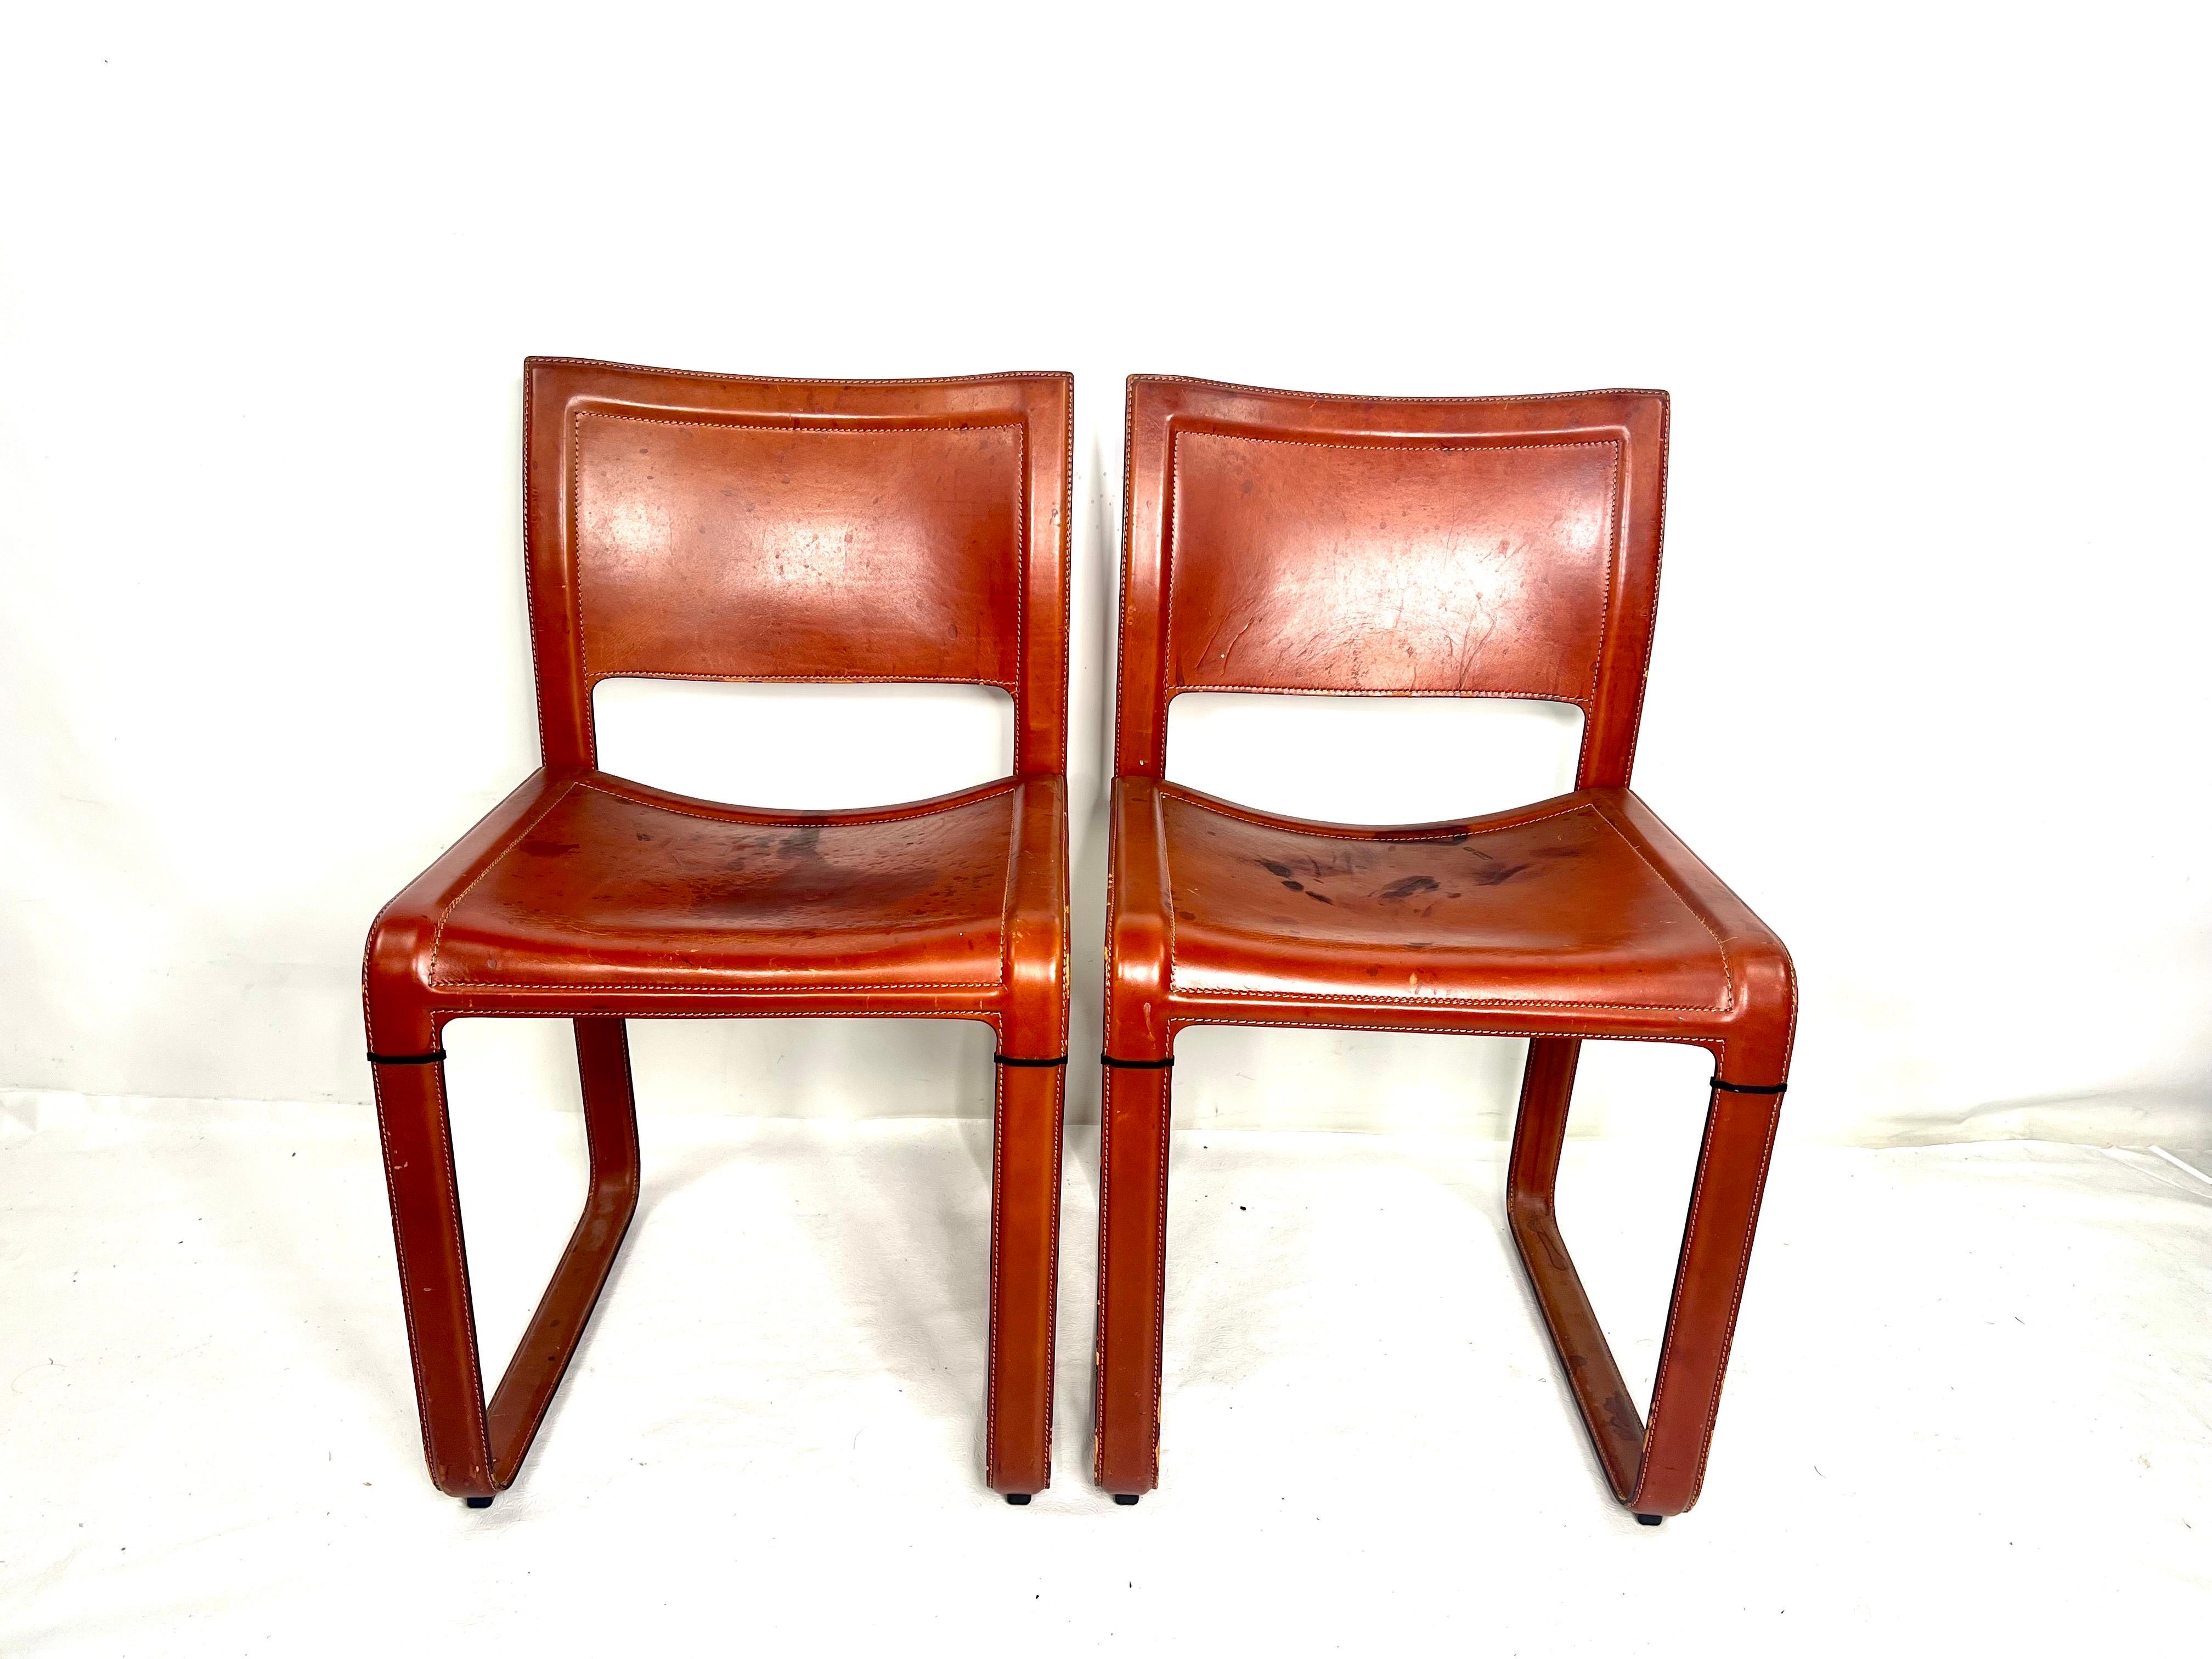 Il s'agit d'une très belle paire de chaises originales fabriquées par Matteo Grassi. Les chaises ont une belle patine d'âge.